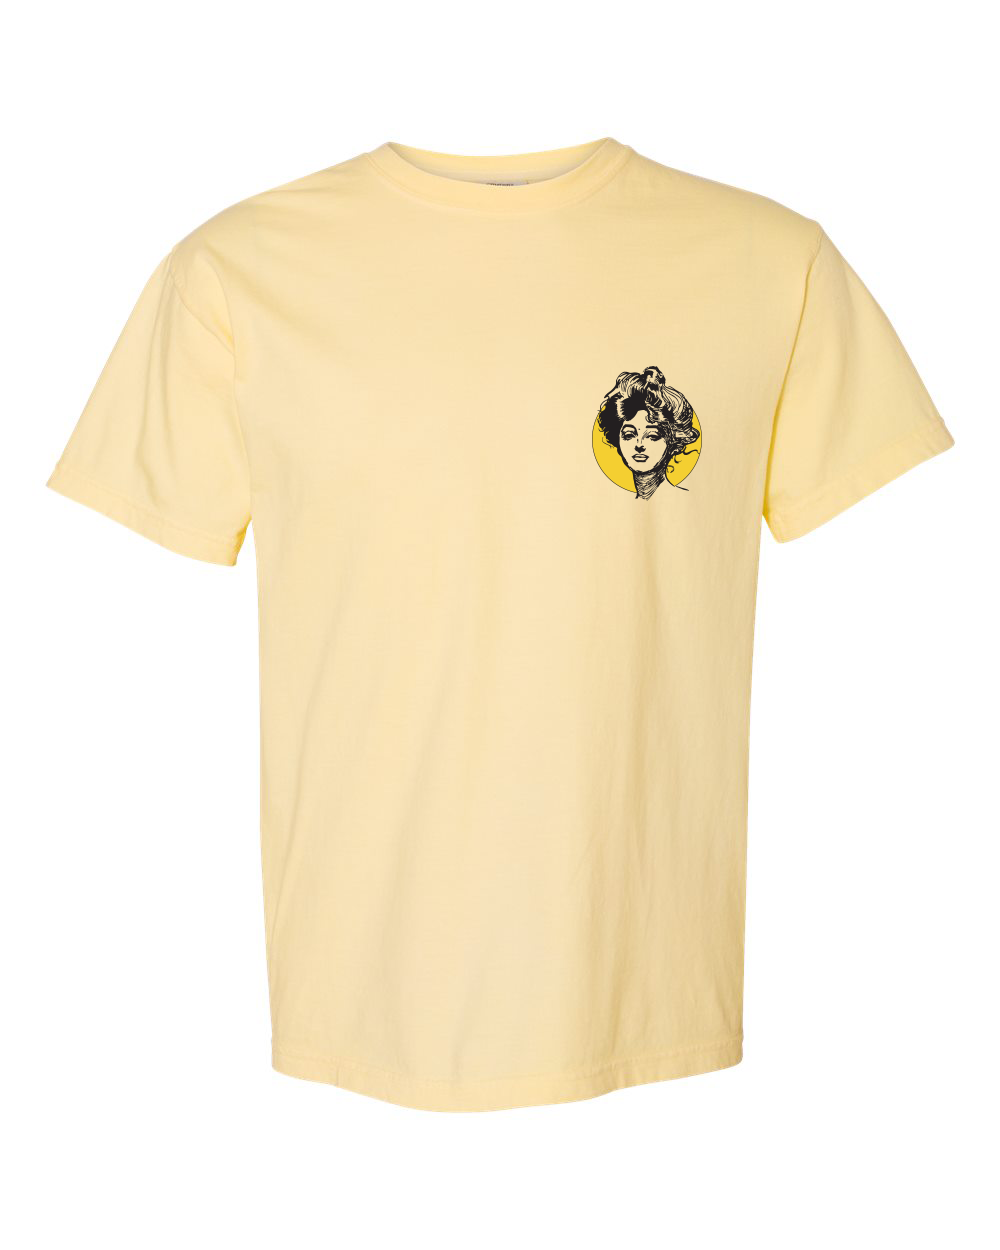 Golden Girl unisex short sleeve t-shirt